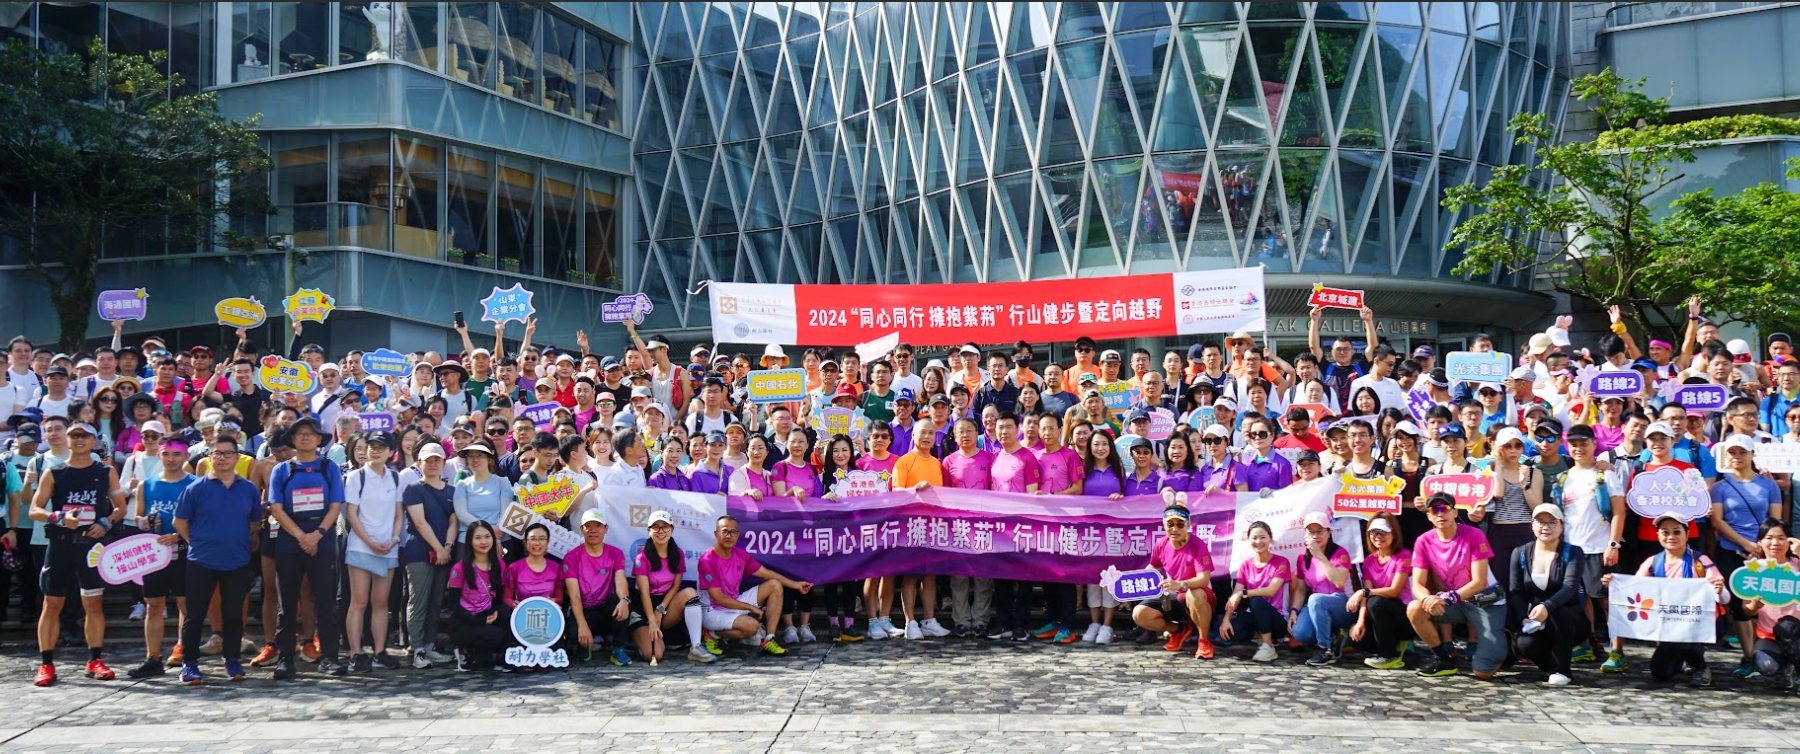 慶祝香港回歸祖國27周年 香港島婦女聯會舉行行山健步暨定向越野活動